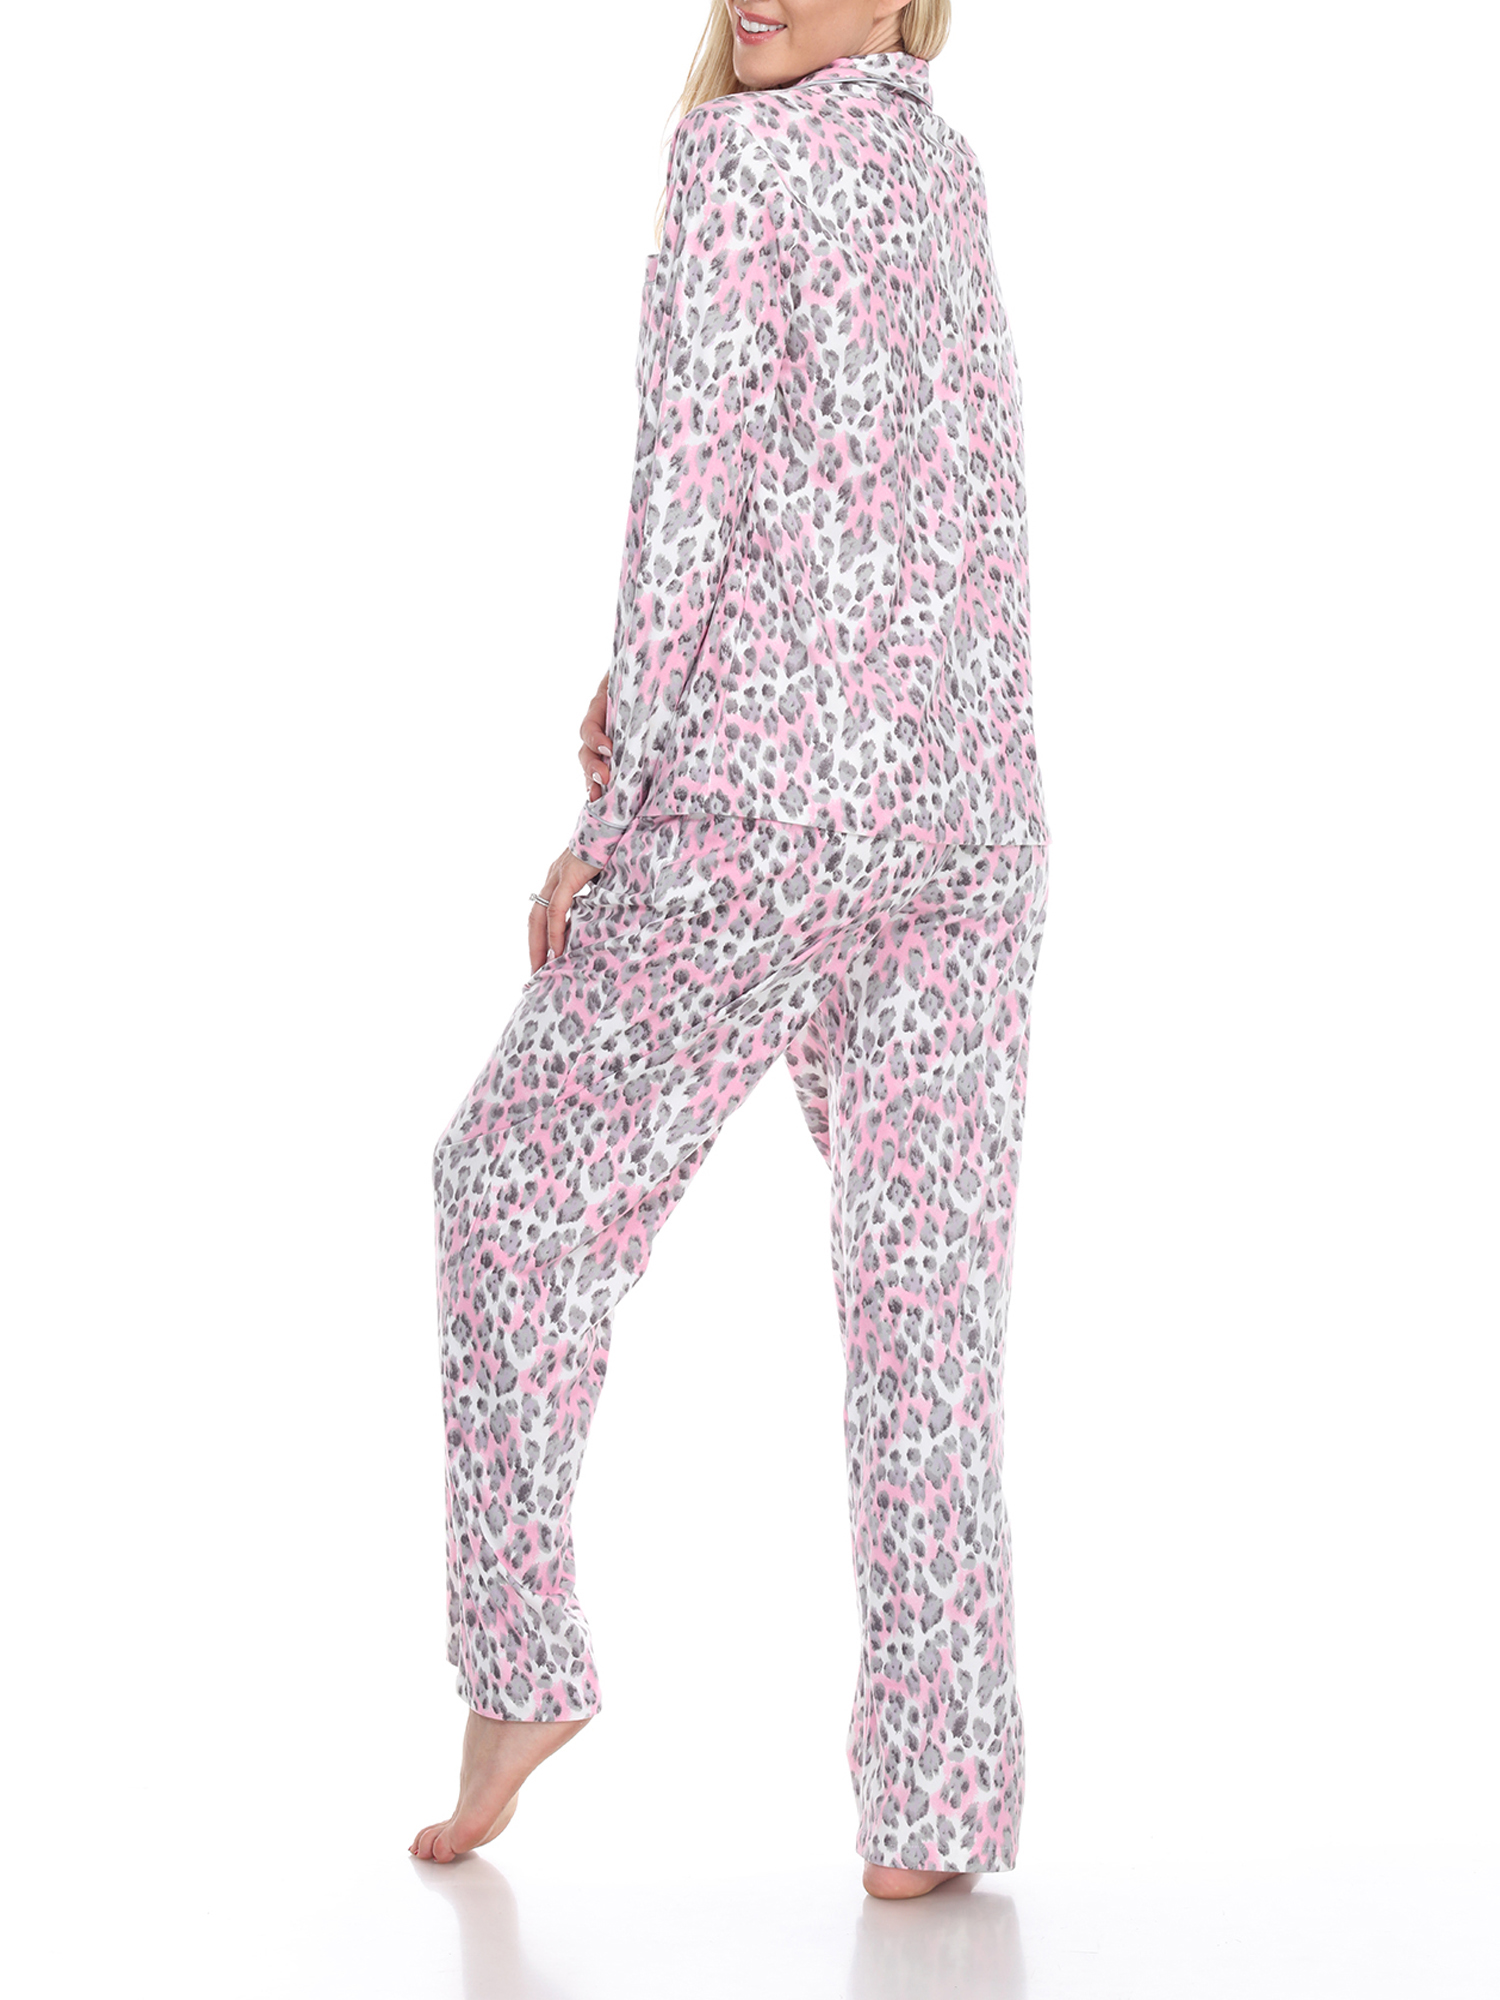 White Mark Women's Pajama Set - Extended Sizes - image 3 of 4